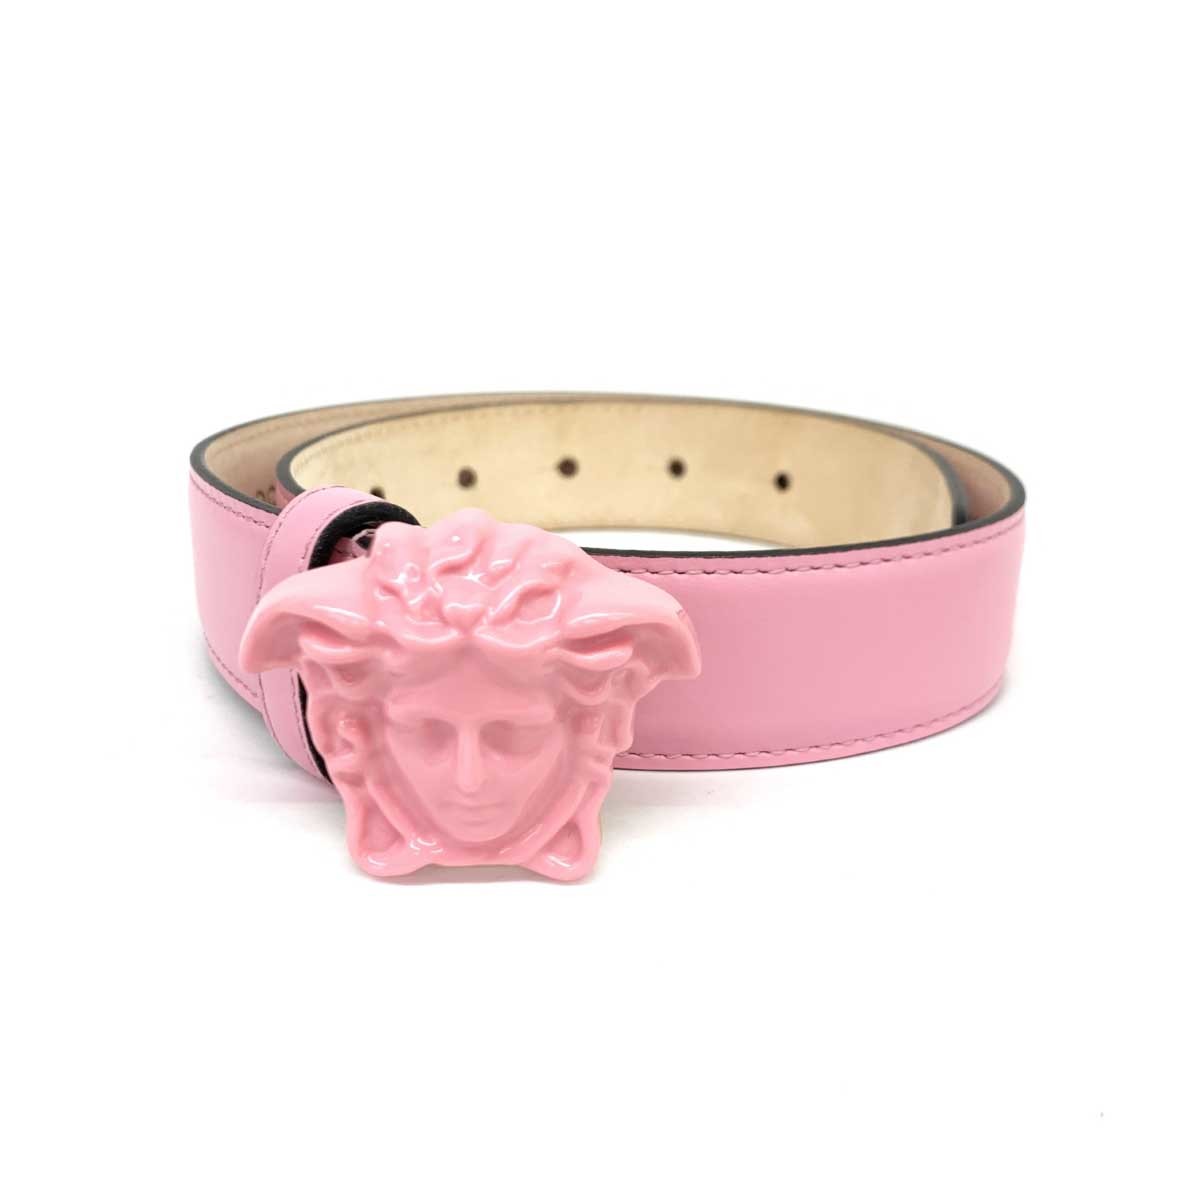 良好◆VERSACE ヴェルサーチェ ベルト 60/24◆ ピンク メデューサ スライド レディース イタリア製 ベルト 服飾小物